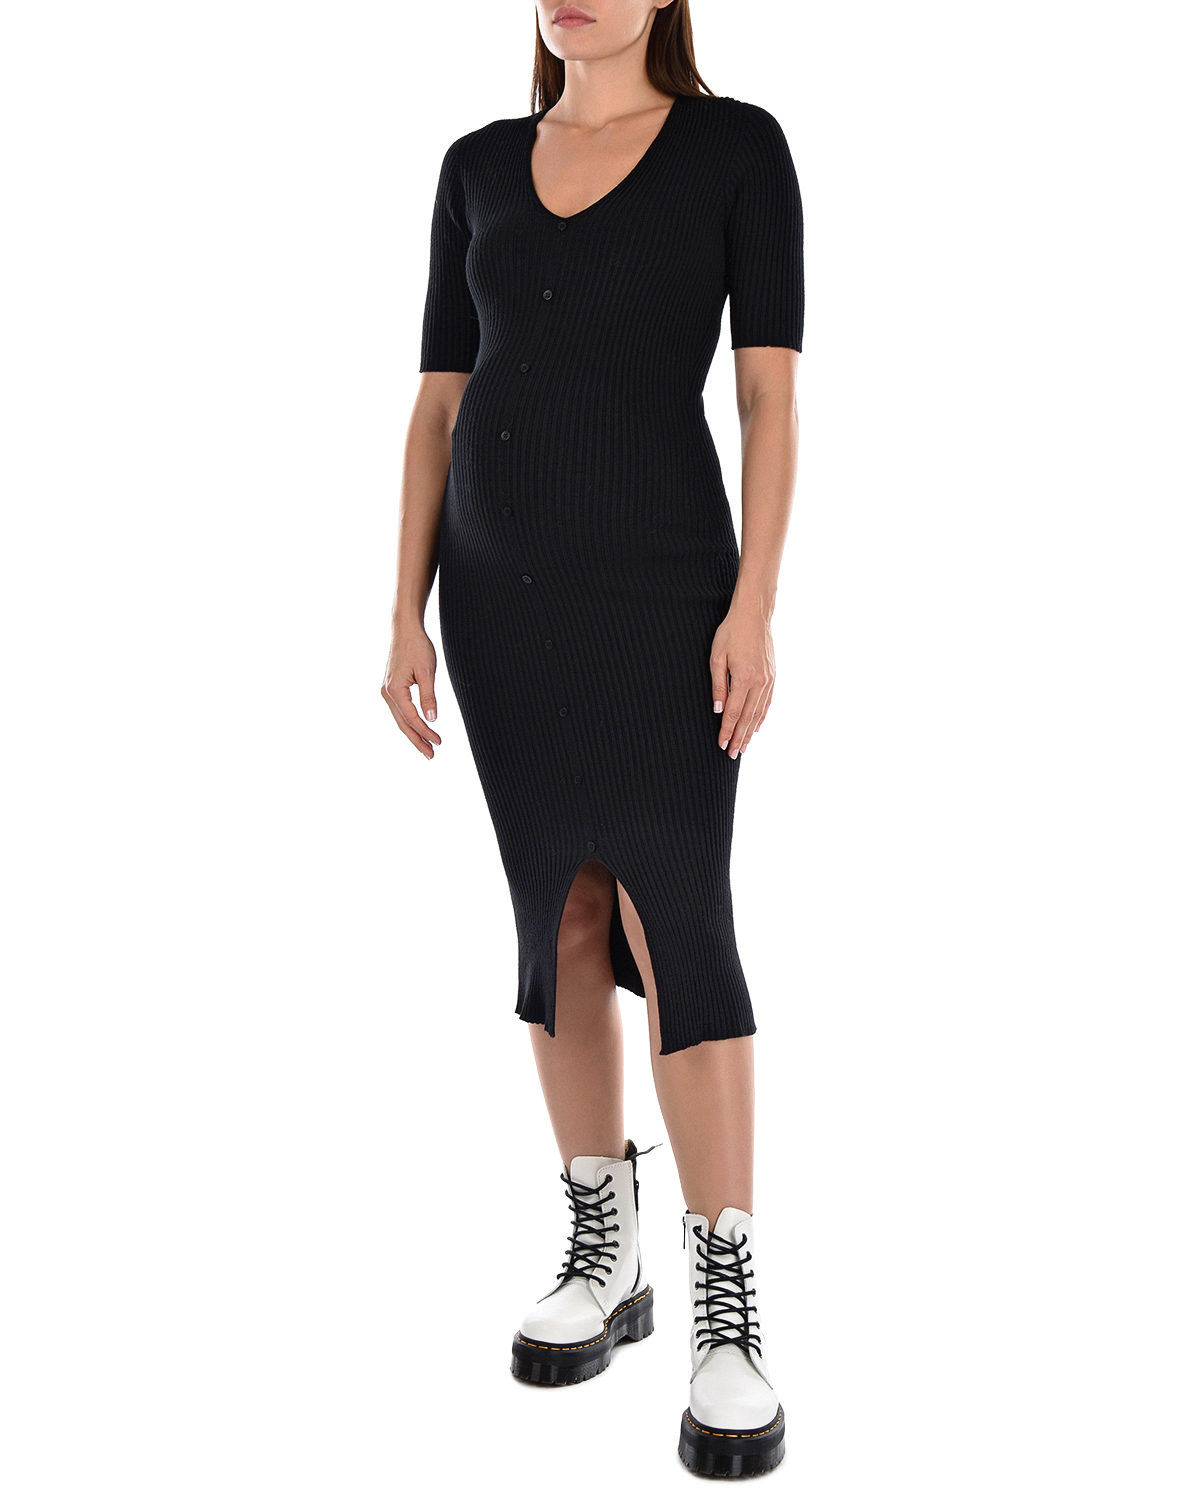 Черное трикотажное платье Bella Pietro Brunelli, размер 40, цвет черный - фото 2